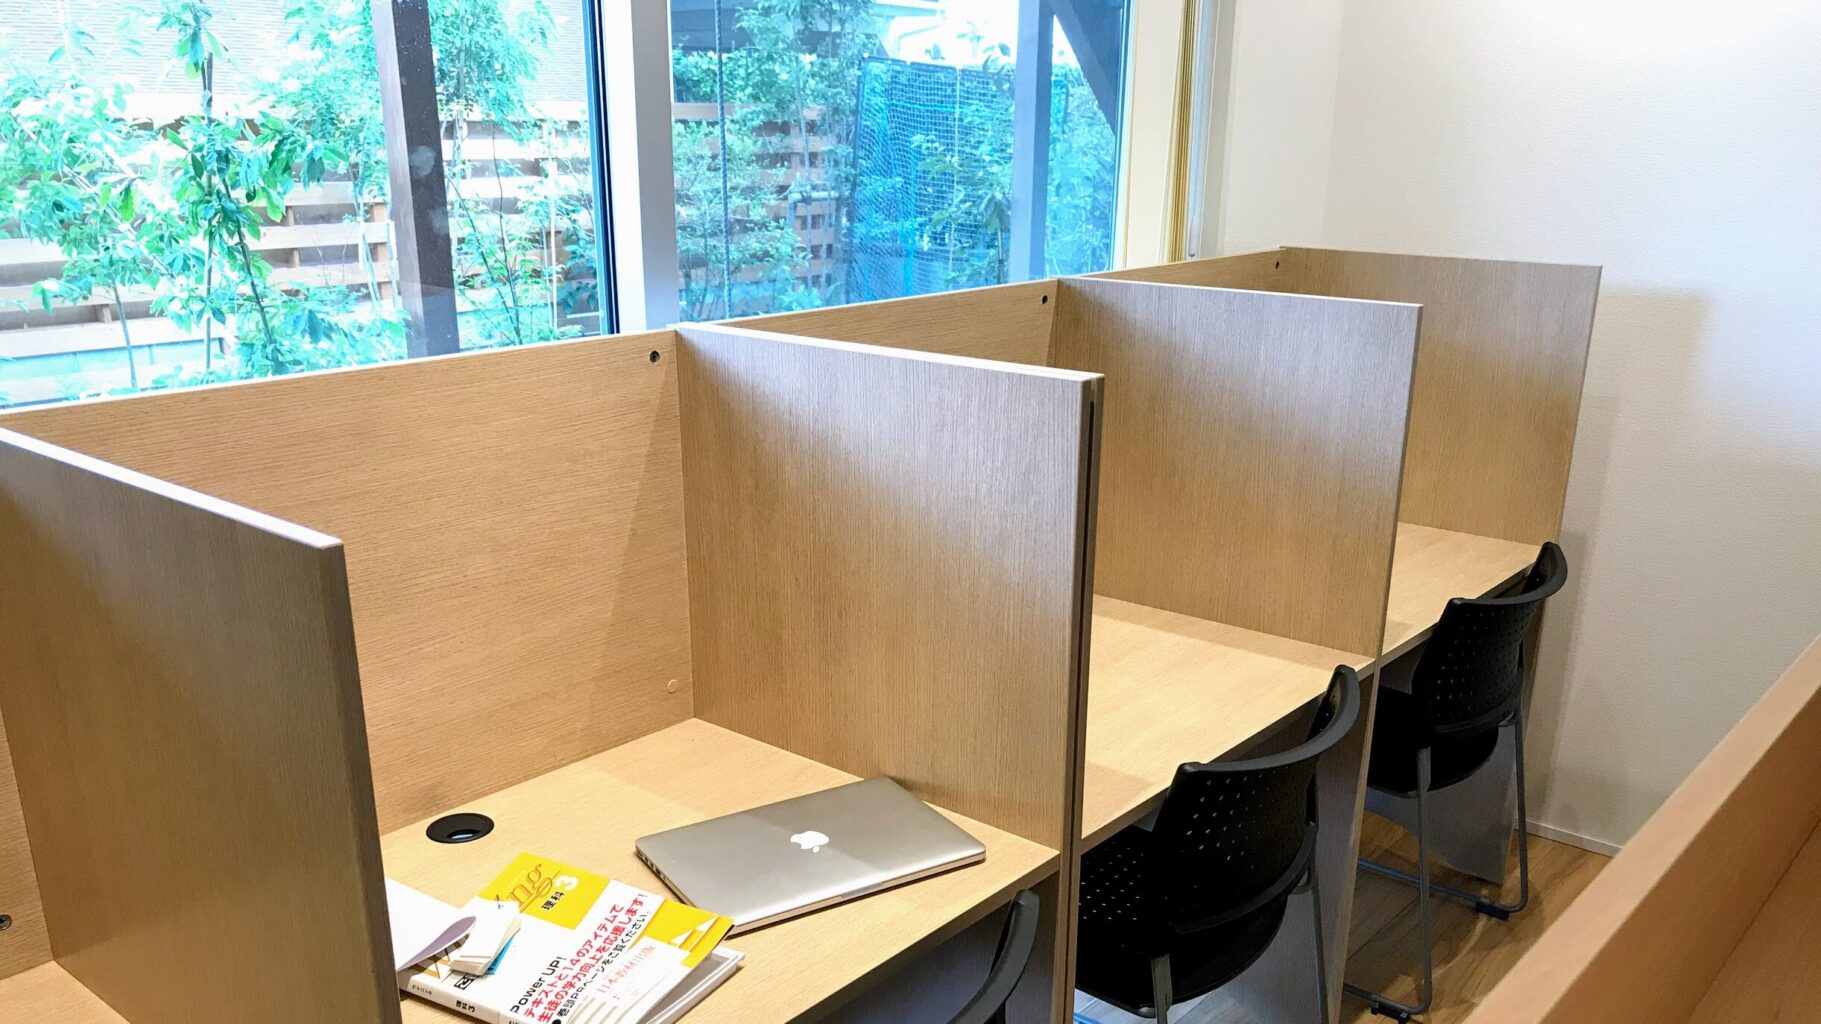 館山市の学習塾ランゲージ・ラボラトリーの自習室の机